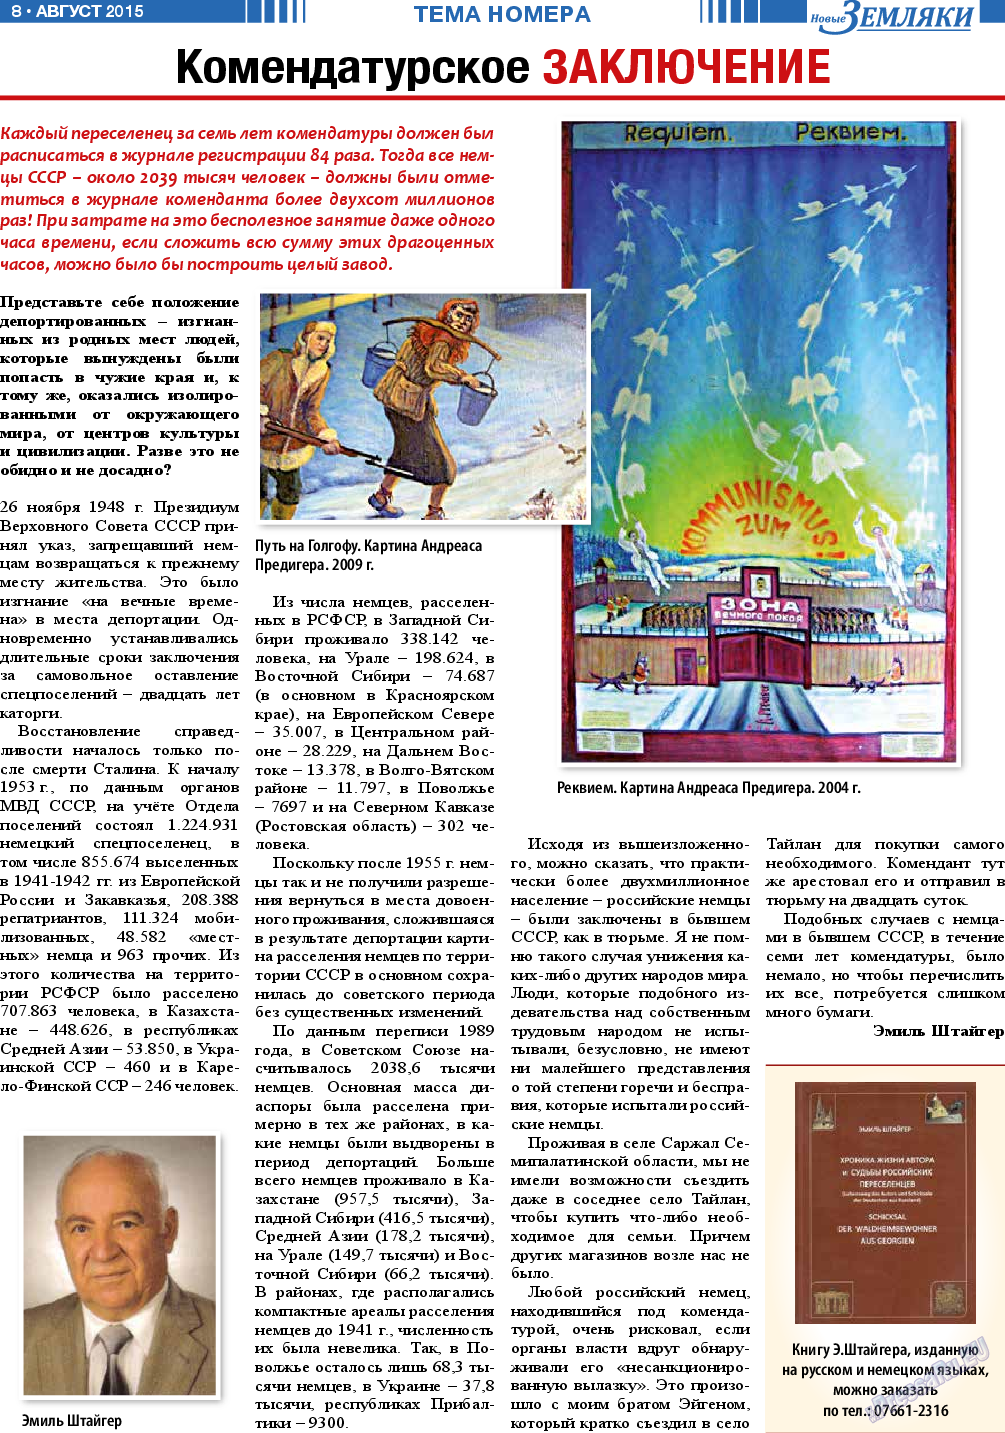 Новые Земляки, газета. 2015 №8 стр.8